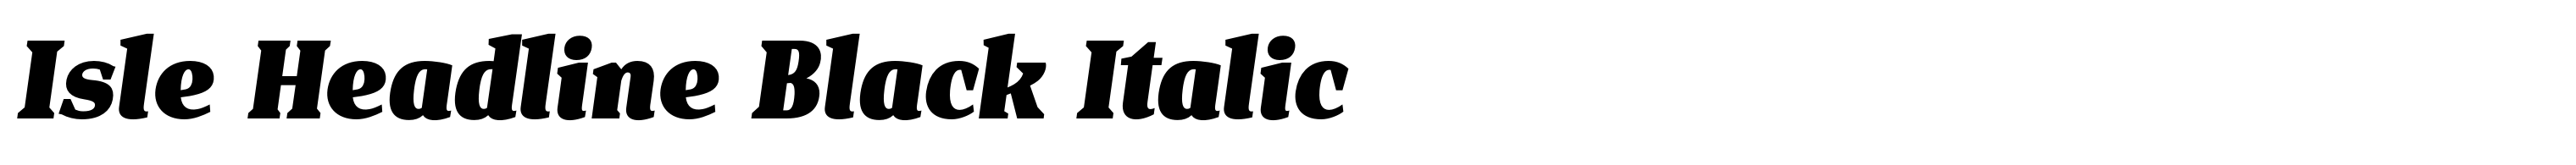 Isle Headline Black Italic